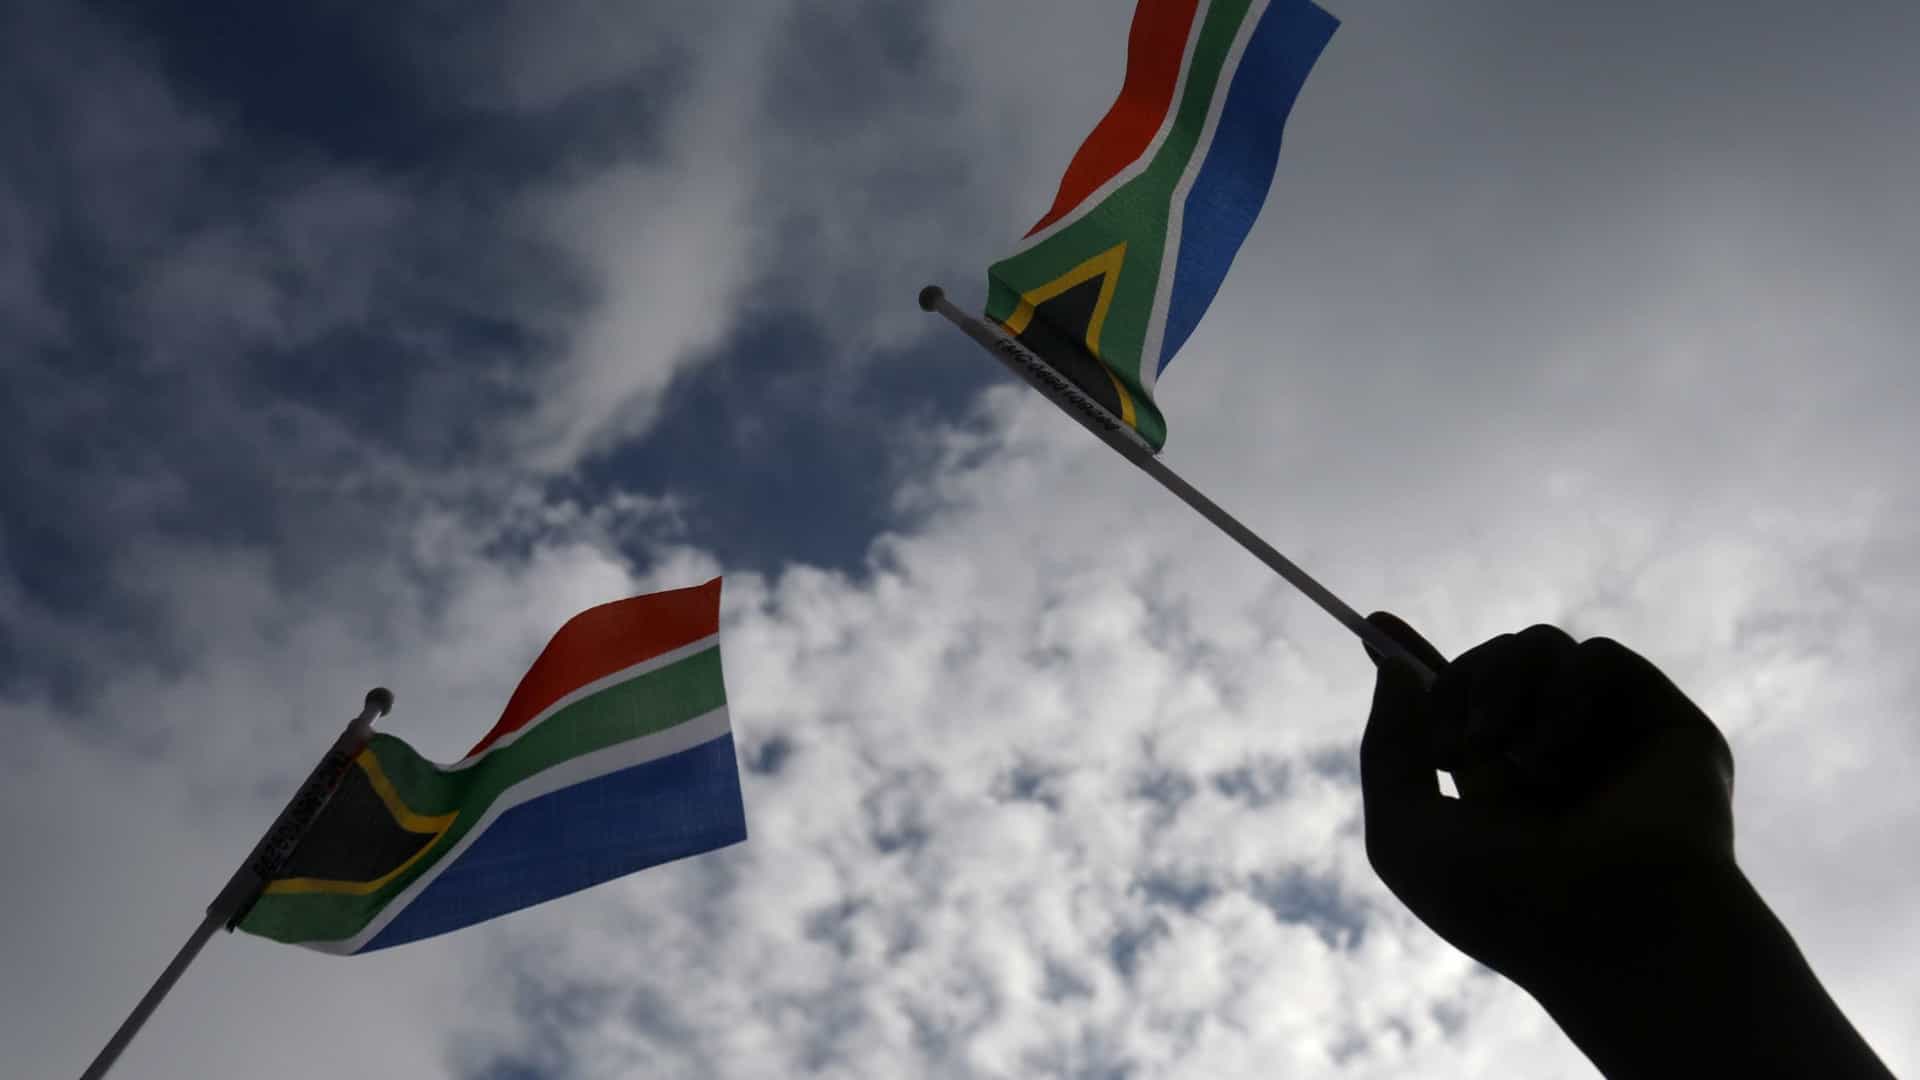 África do Sul. 13 agentes detidos por morte sob custódia policial